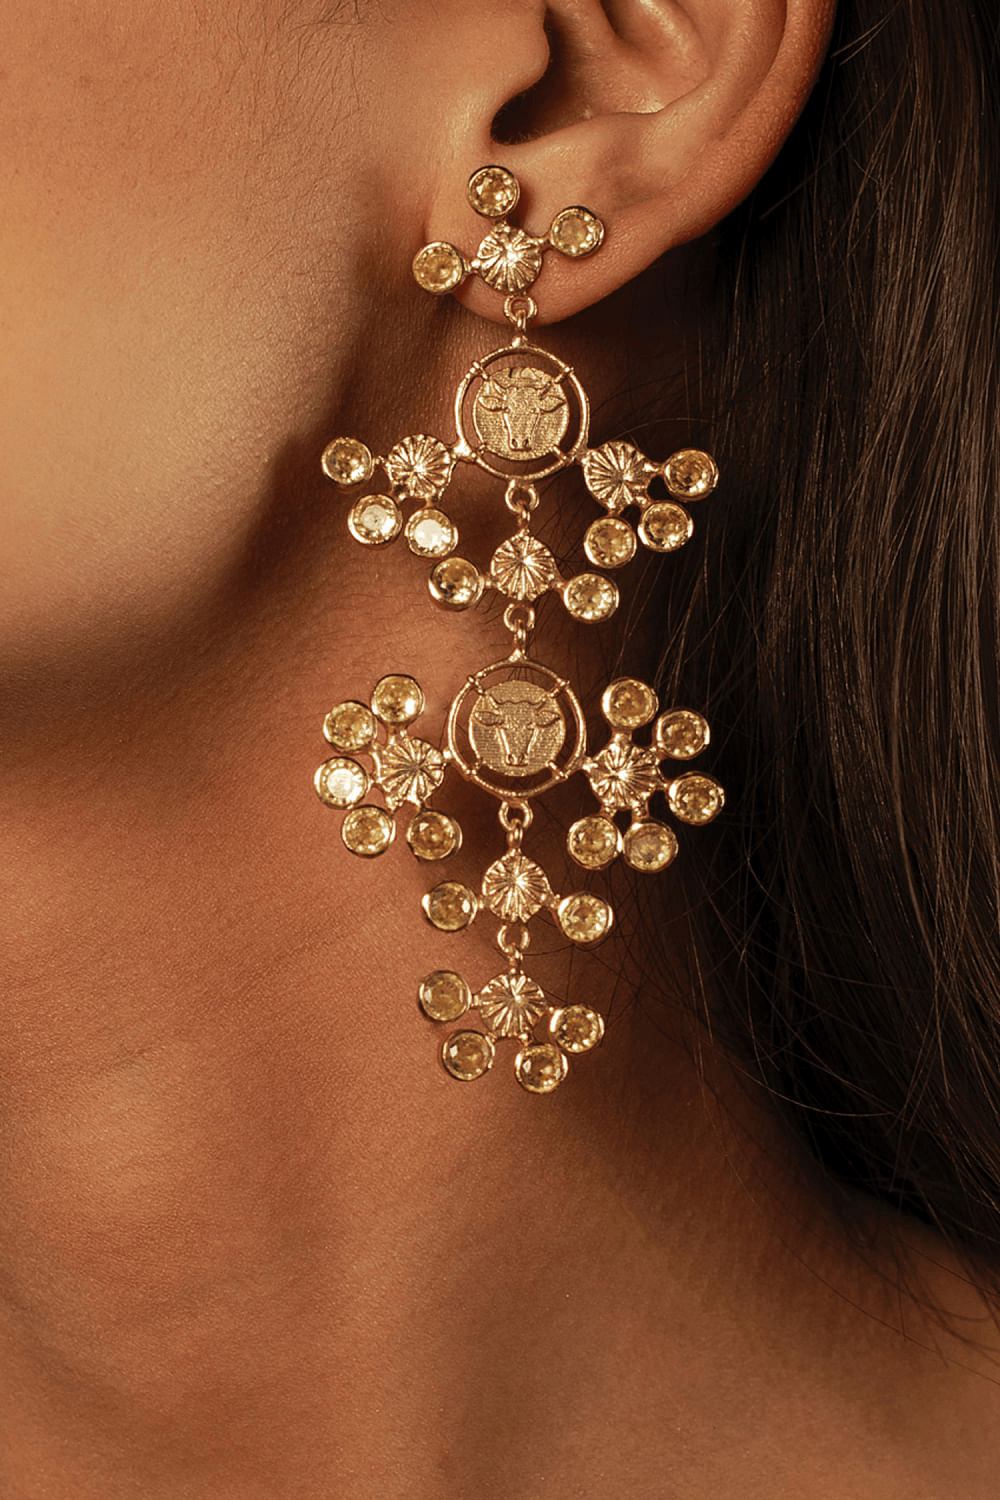 Chandelier Earrings by Dhwani Bansal